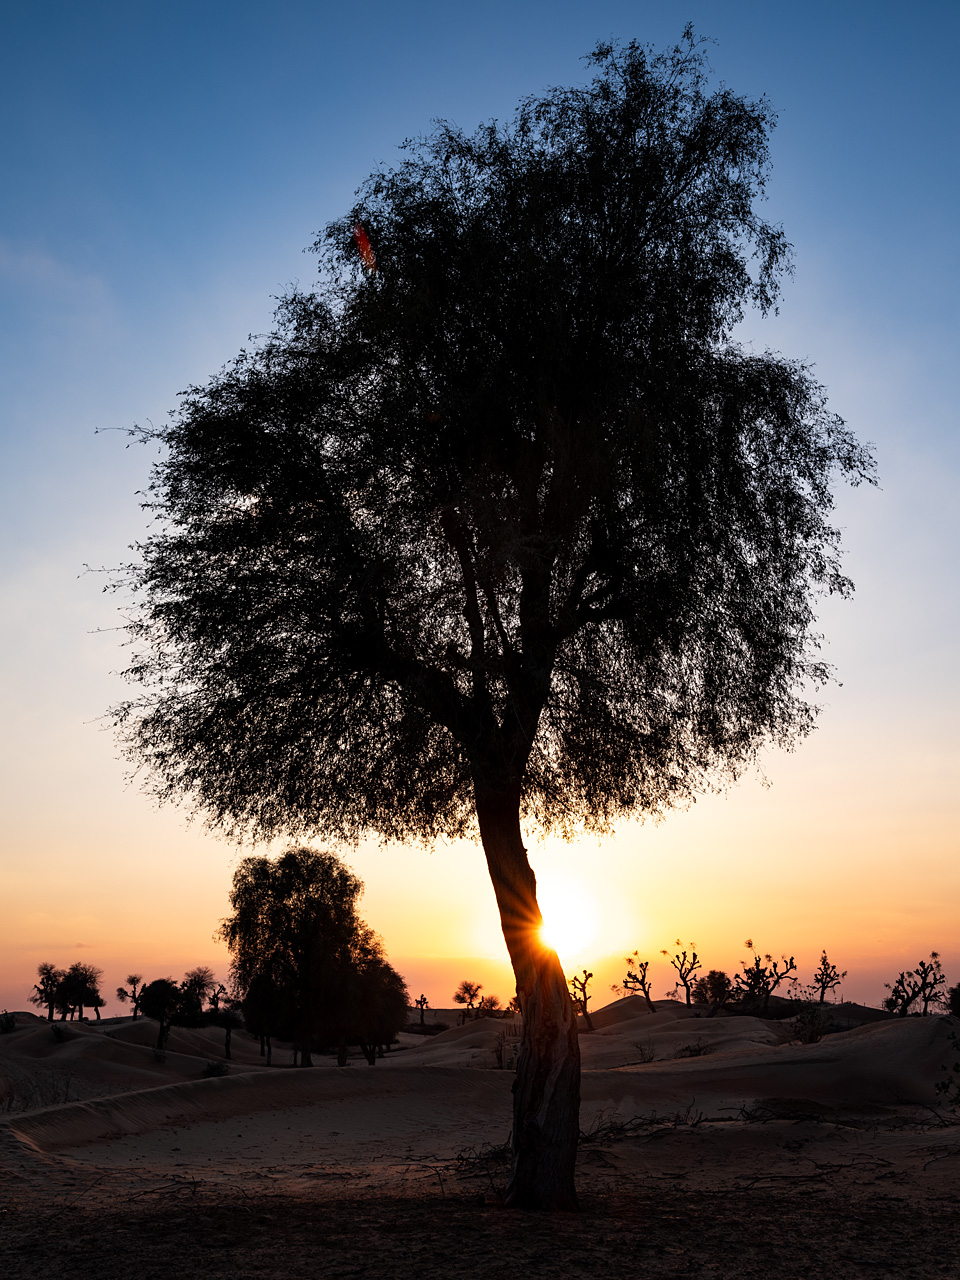 Desert trees #1